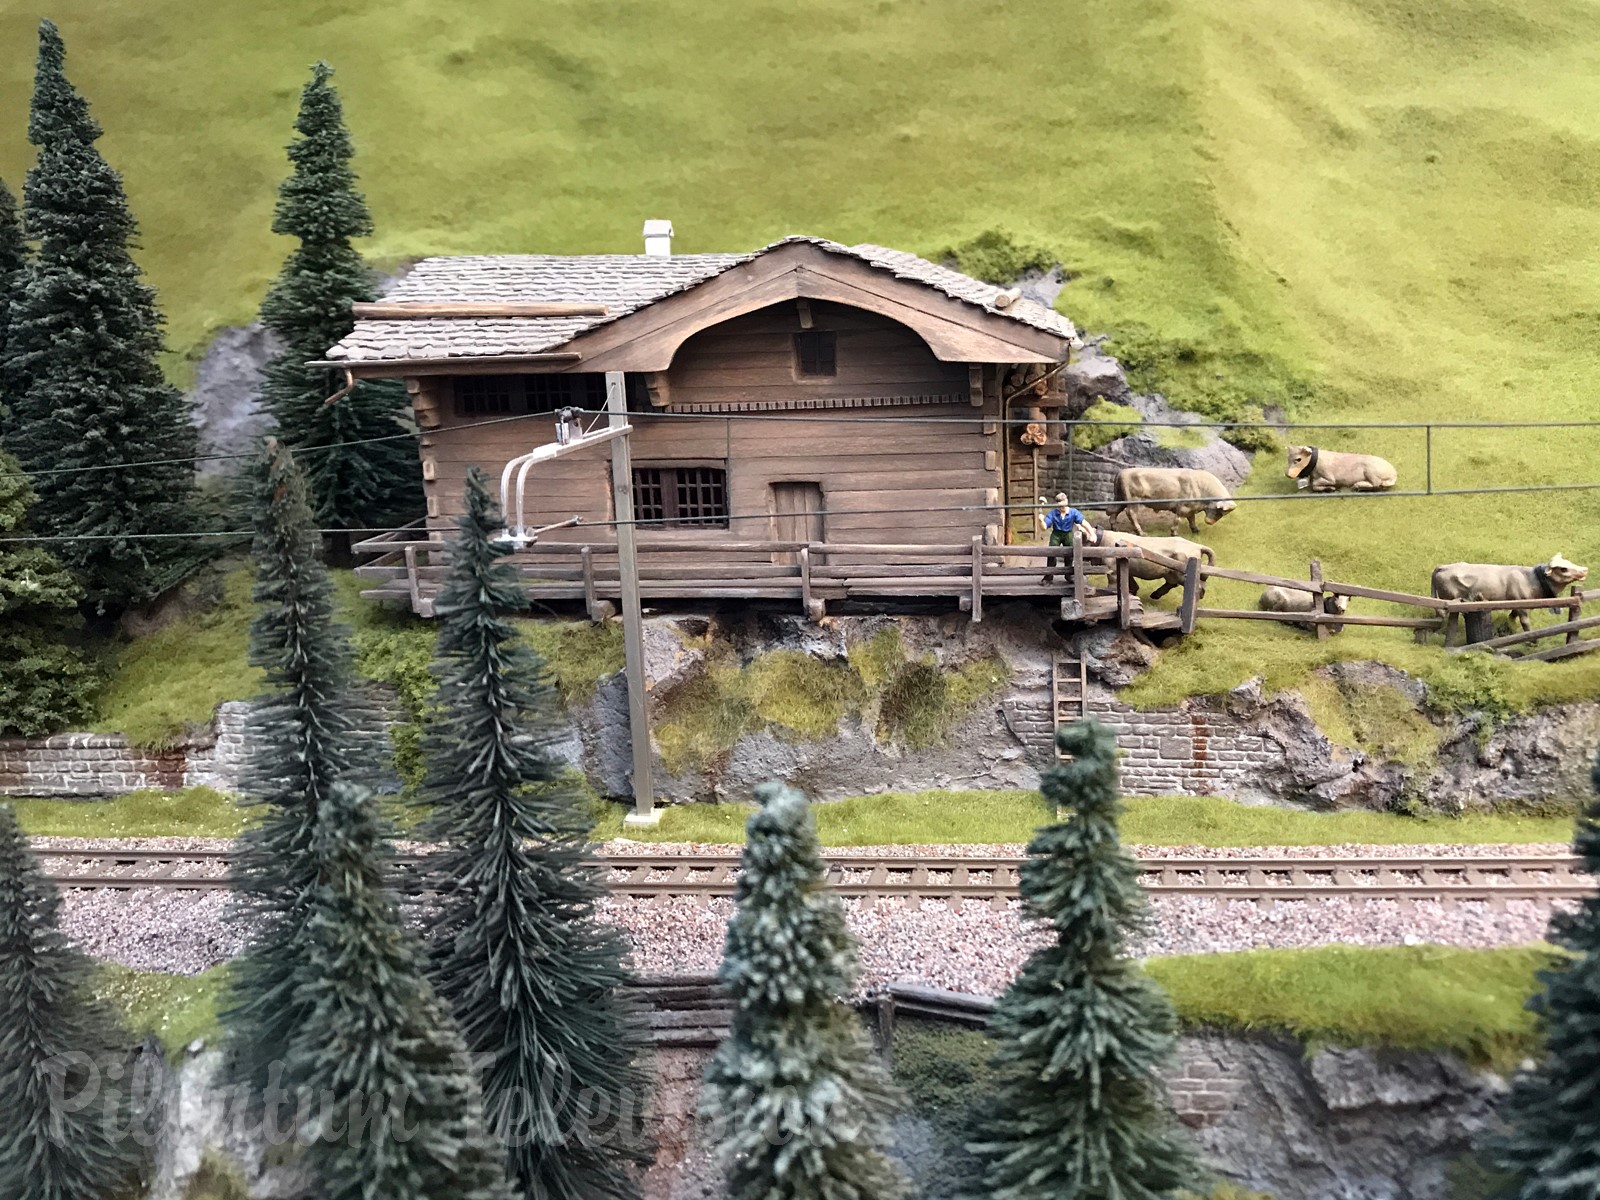 Pociągi w skali HO w Szwajcarii: Piękna szwajcarska makieta kolejowa Briana Rodhama